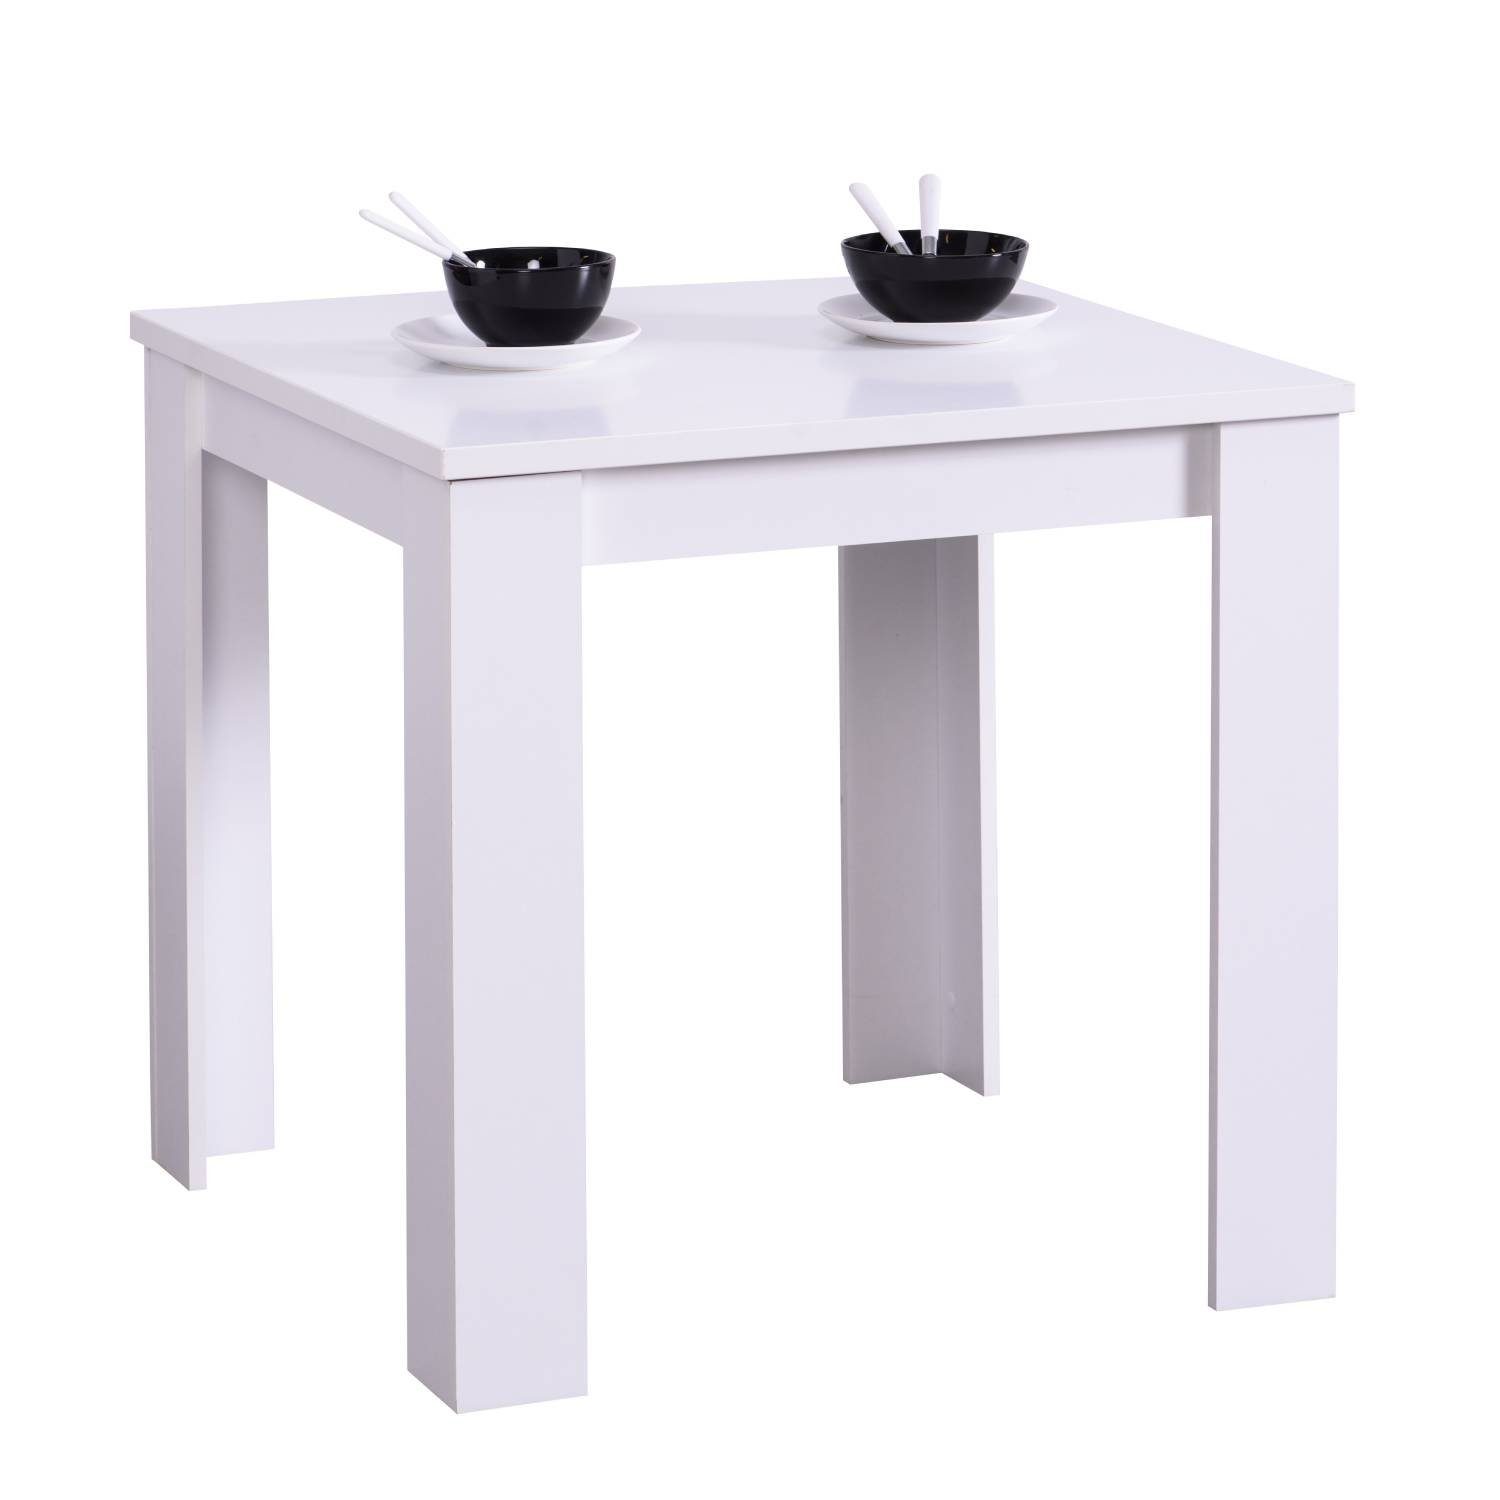 Homestyle4u Esstisch Esszimmertisch Holztisch Küchentisch mehrere Größen Holz Massiv Eiche (kein Set) weiß | weiß | weiß